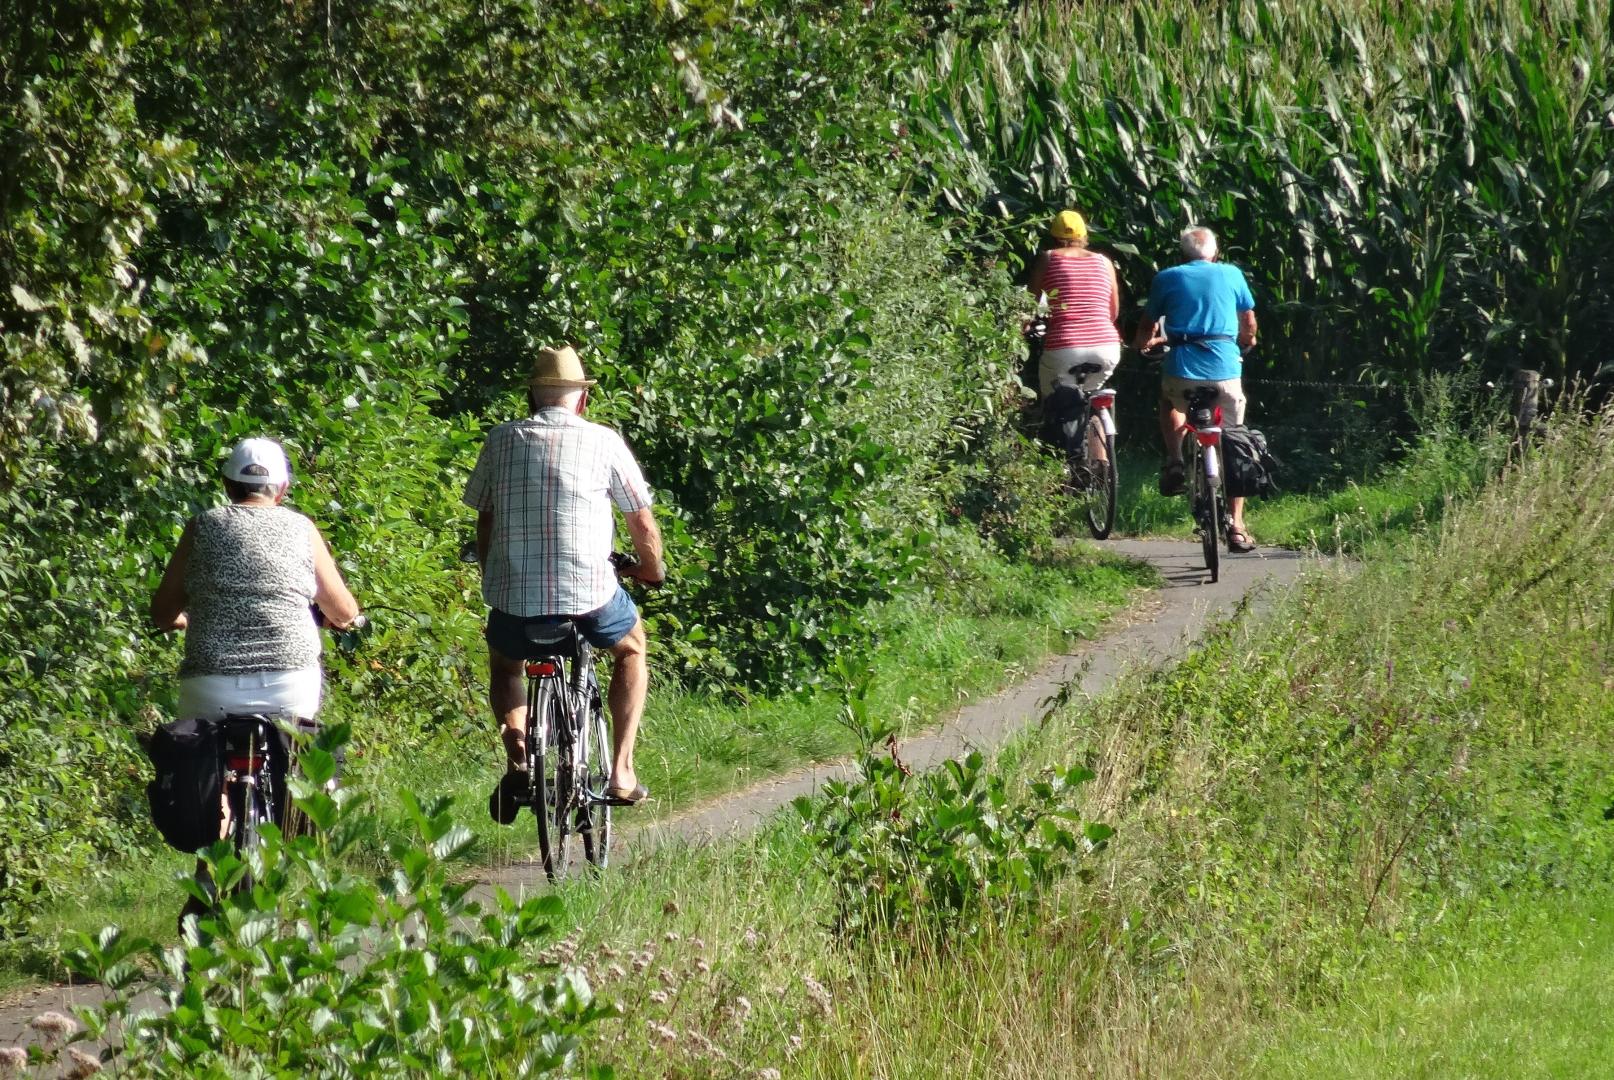 Mensen op de fiets op een pad langs mais